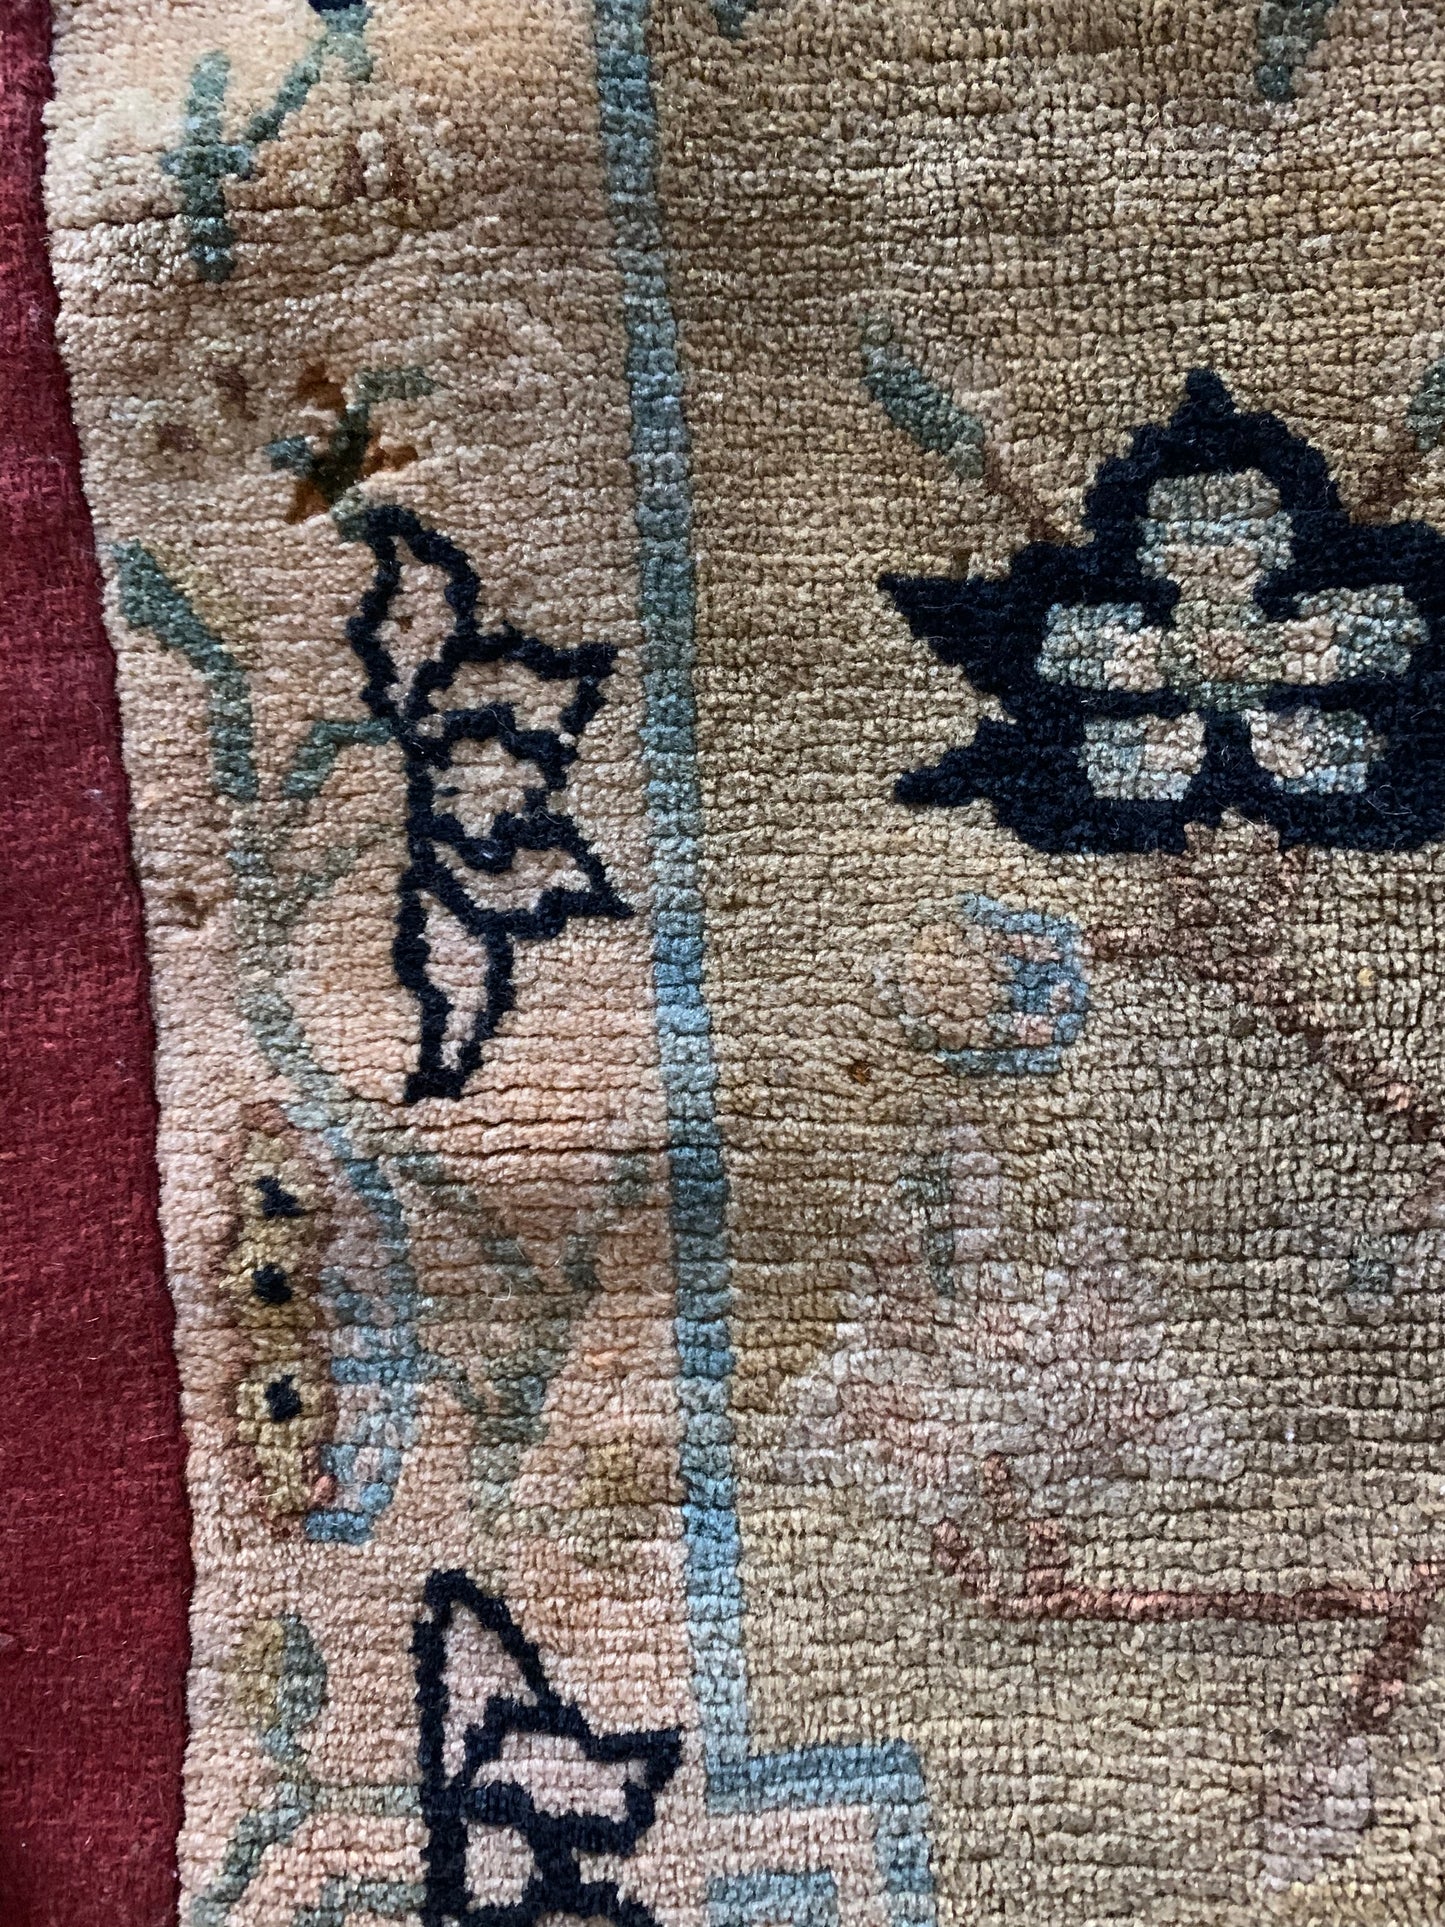 An antique Tibetan meditation rug